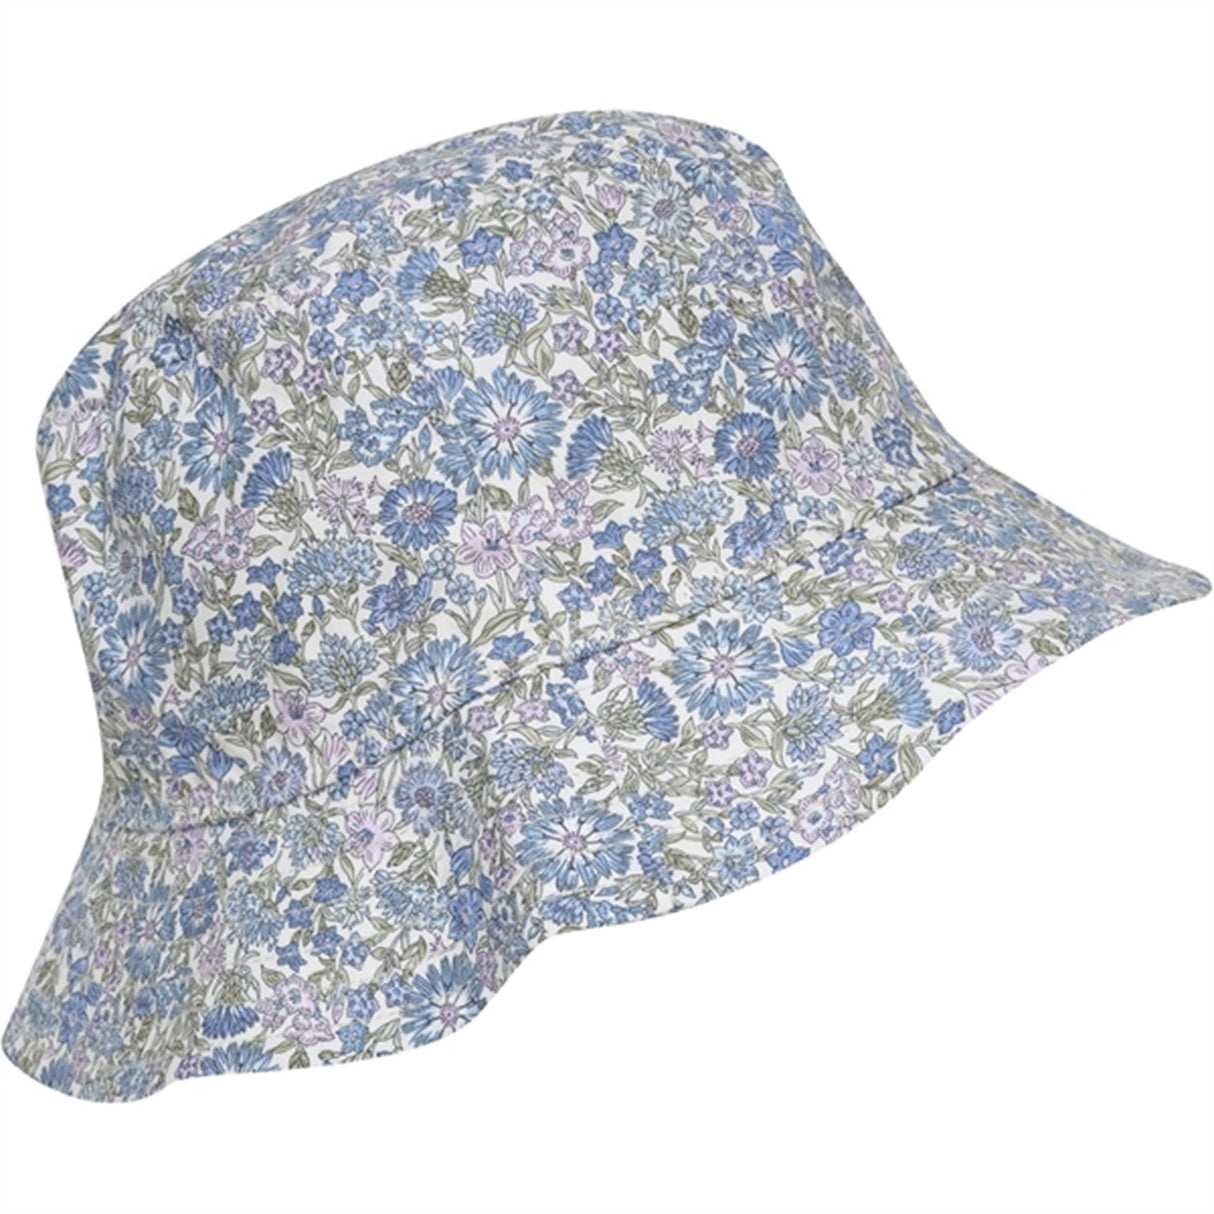 Huttelihut Liberty Fabric May Field Bucket Hat